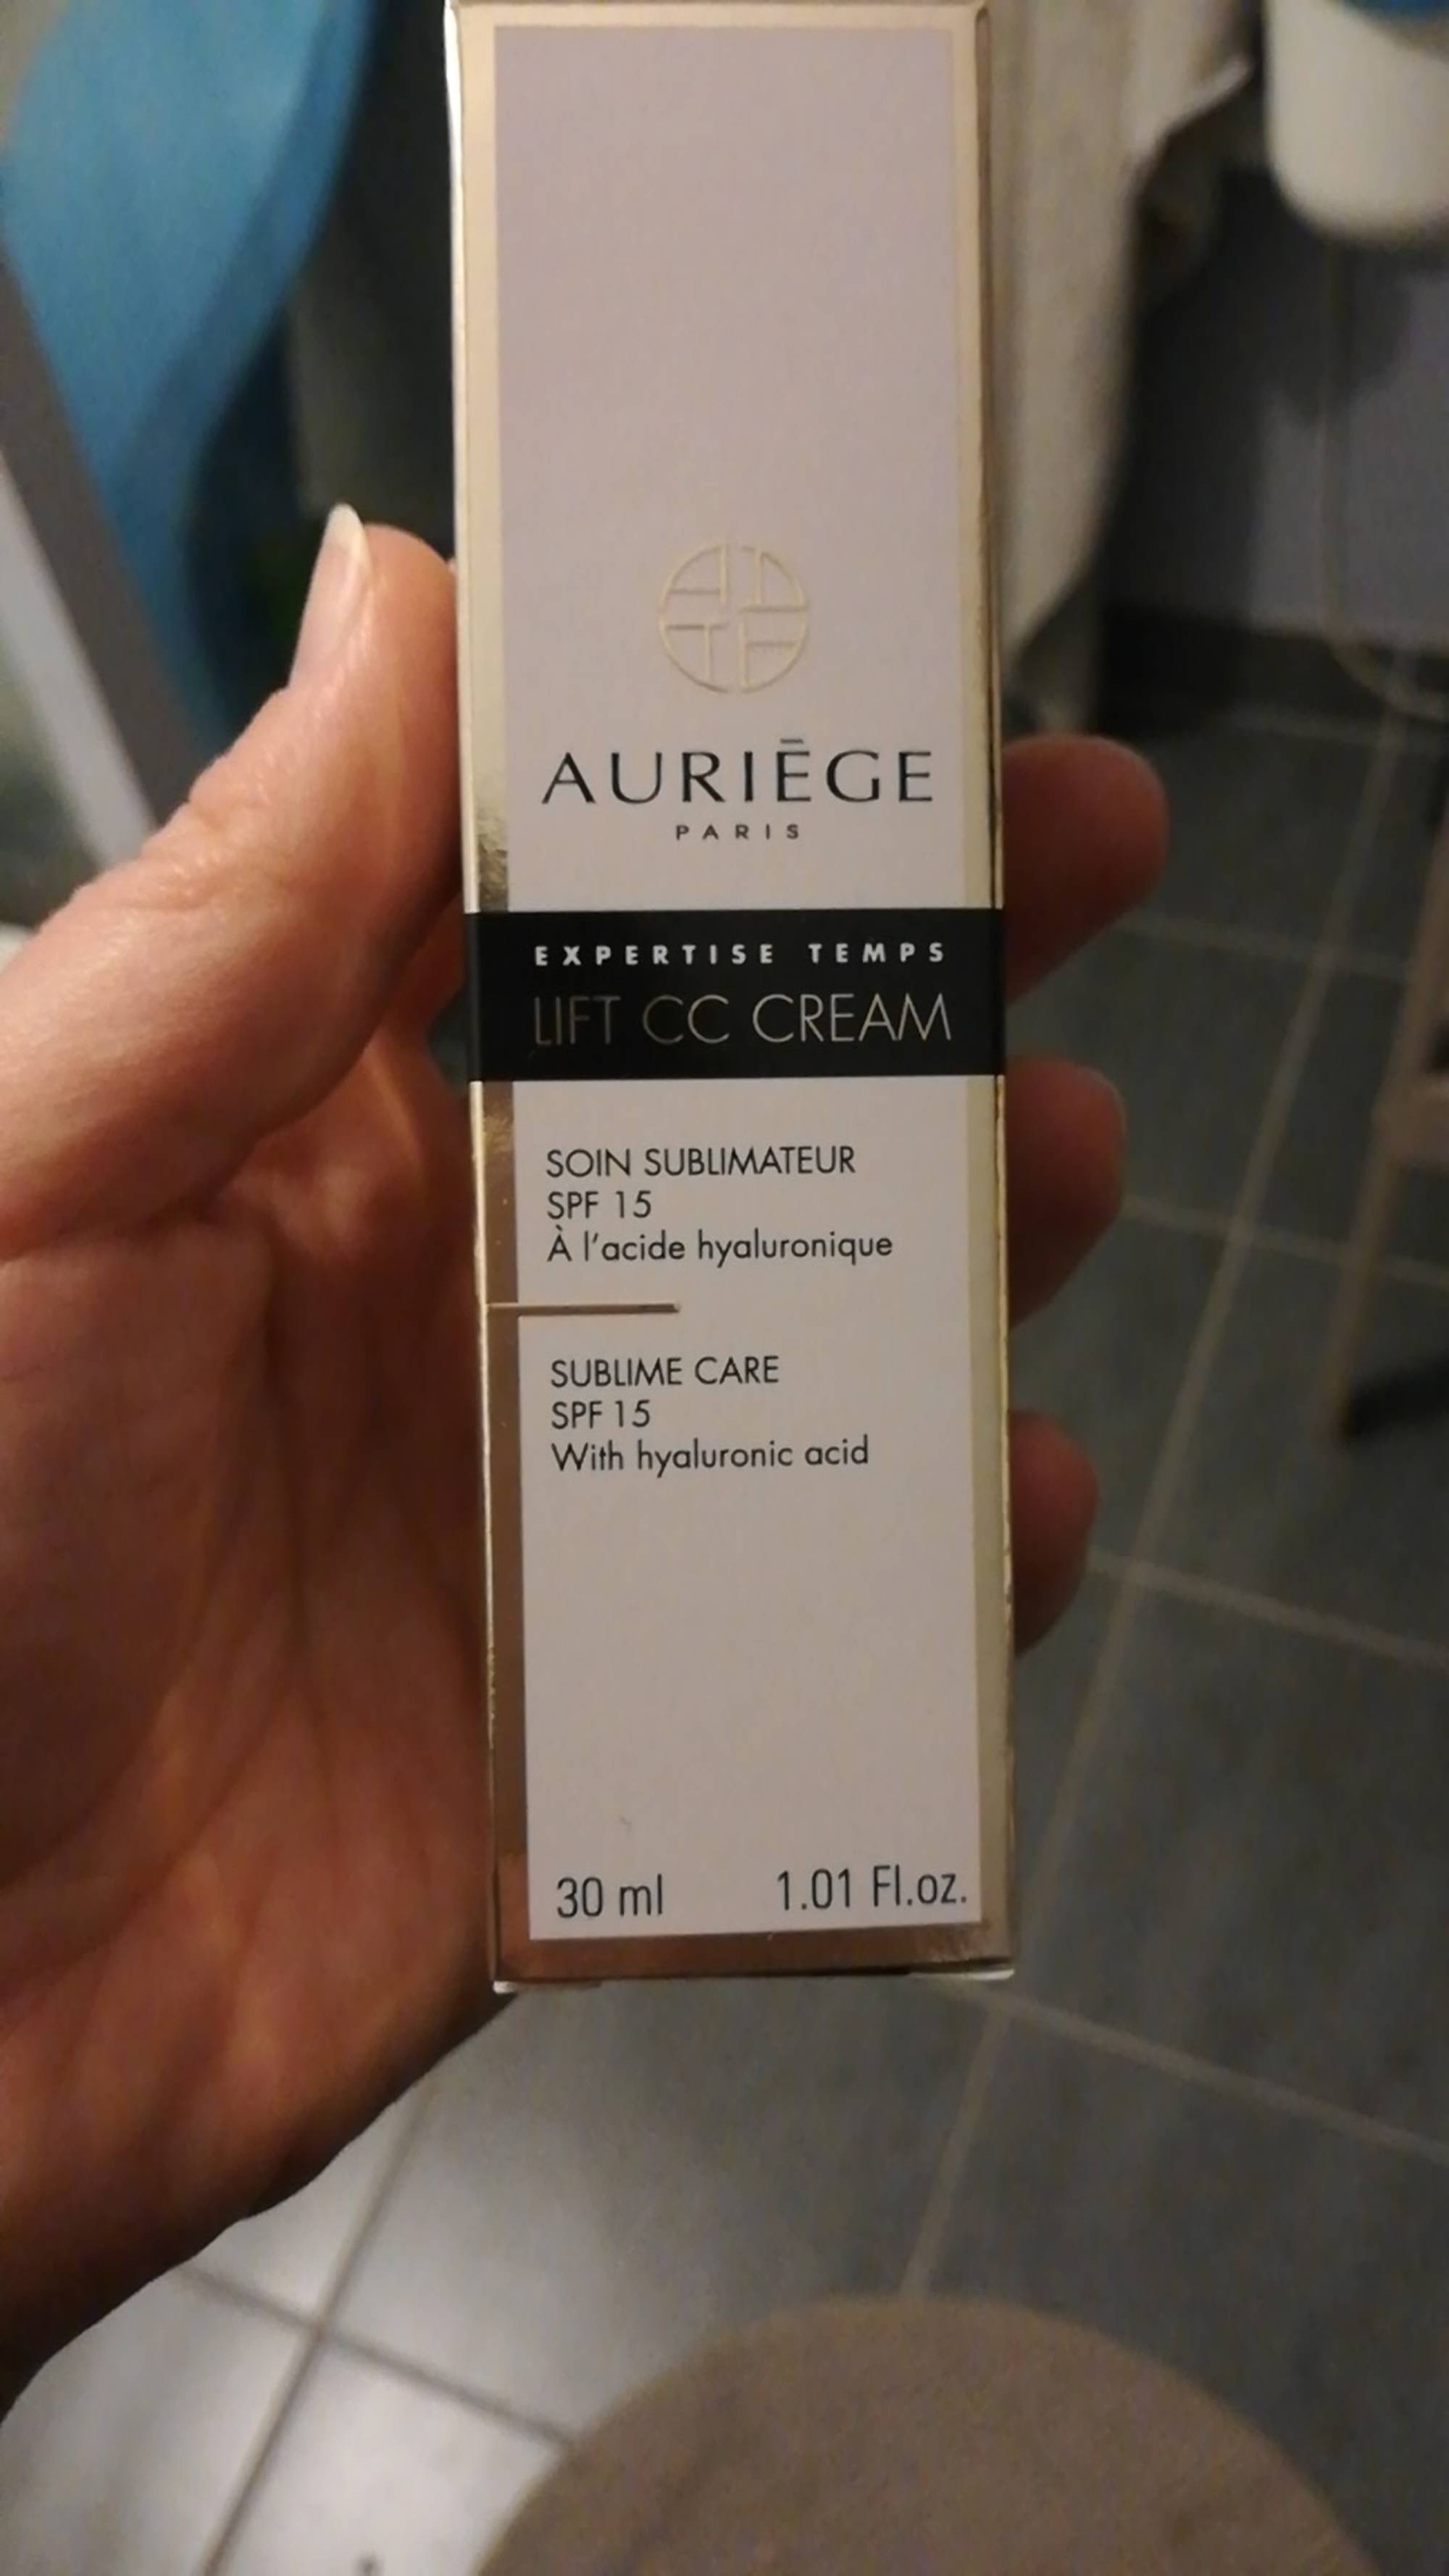 AURIÈGE - Lift CC cream - Soin sublimateur SPF 15